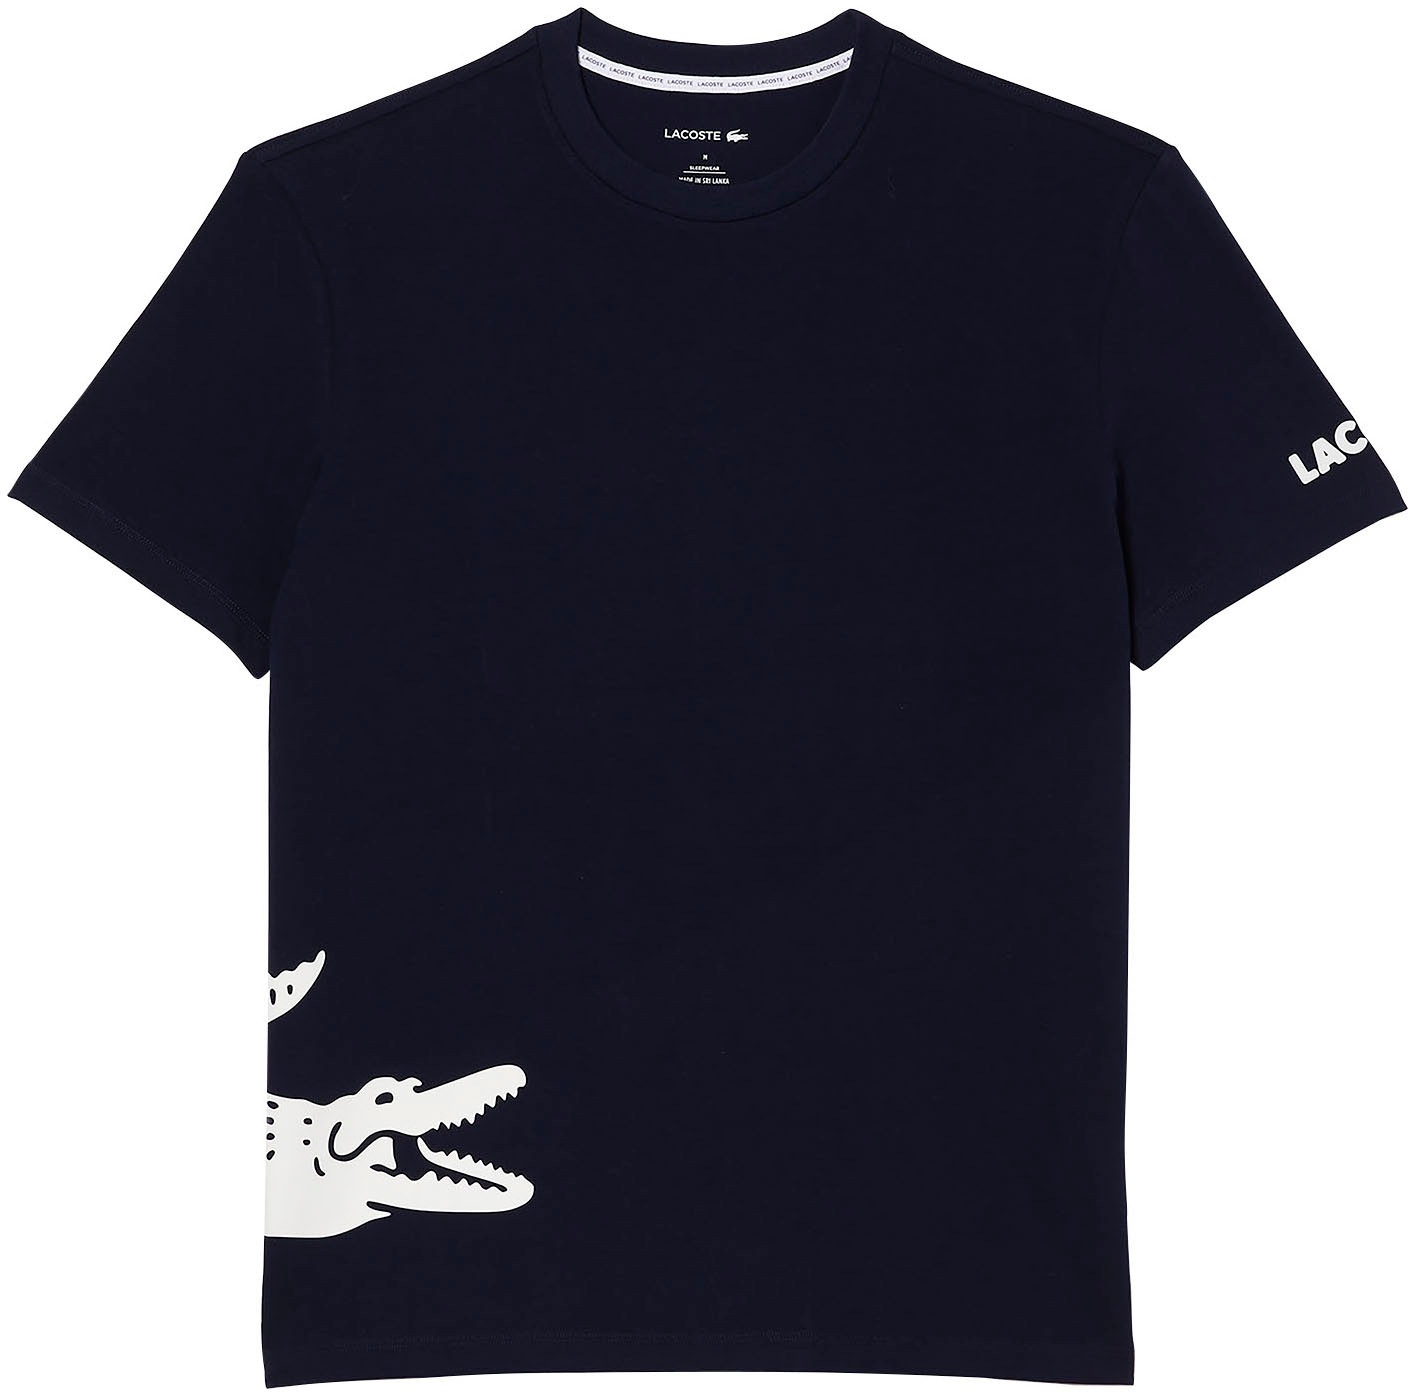 OTTO bei online kaufen T-Shirt Lacoste